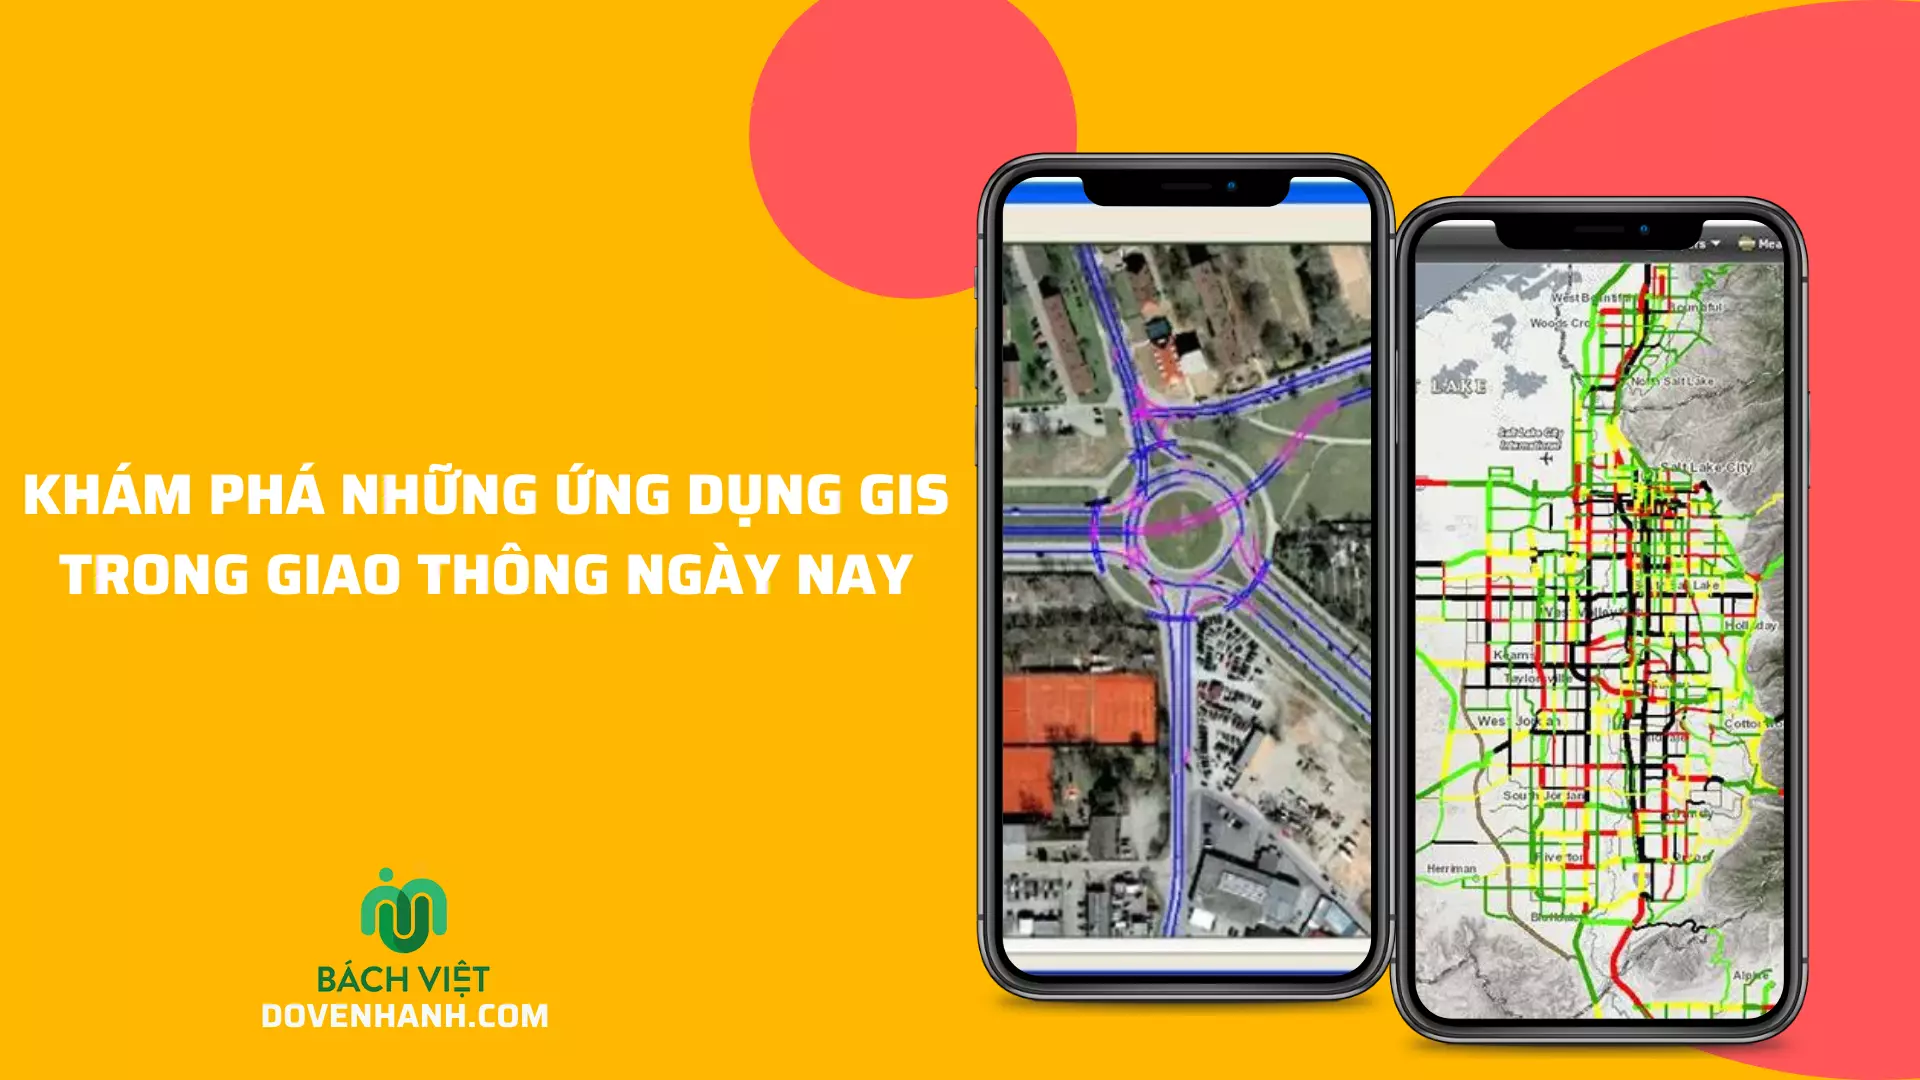 Khám phá những ứng dụng GIS trong giao thông ngày nay